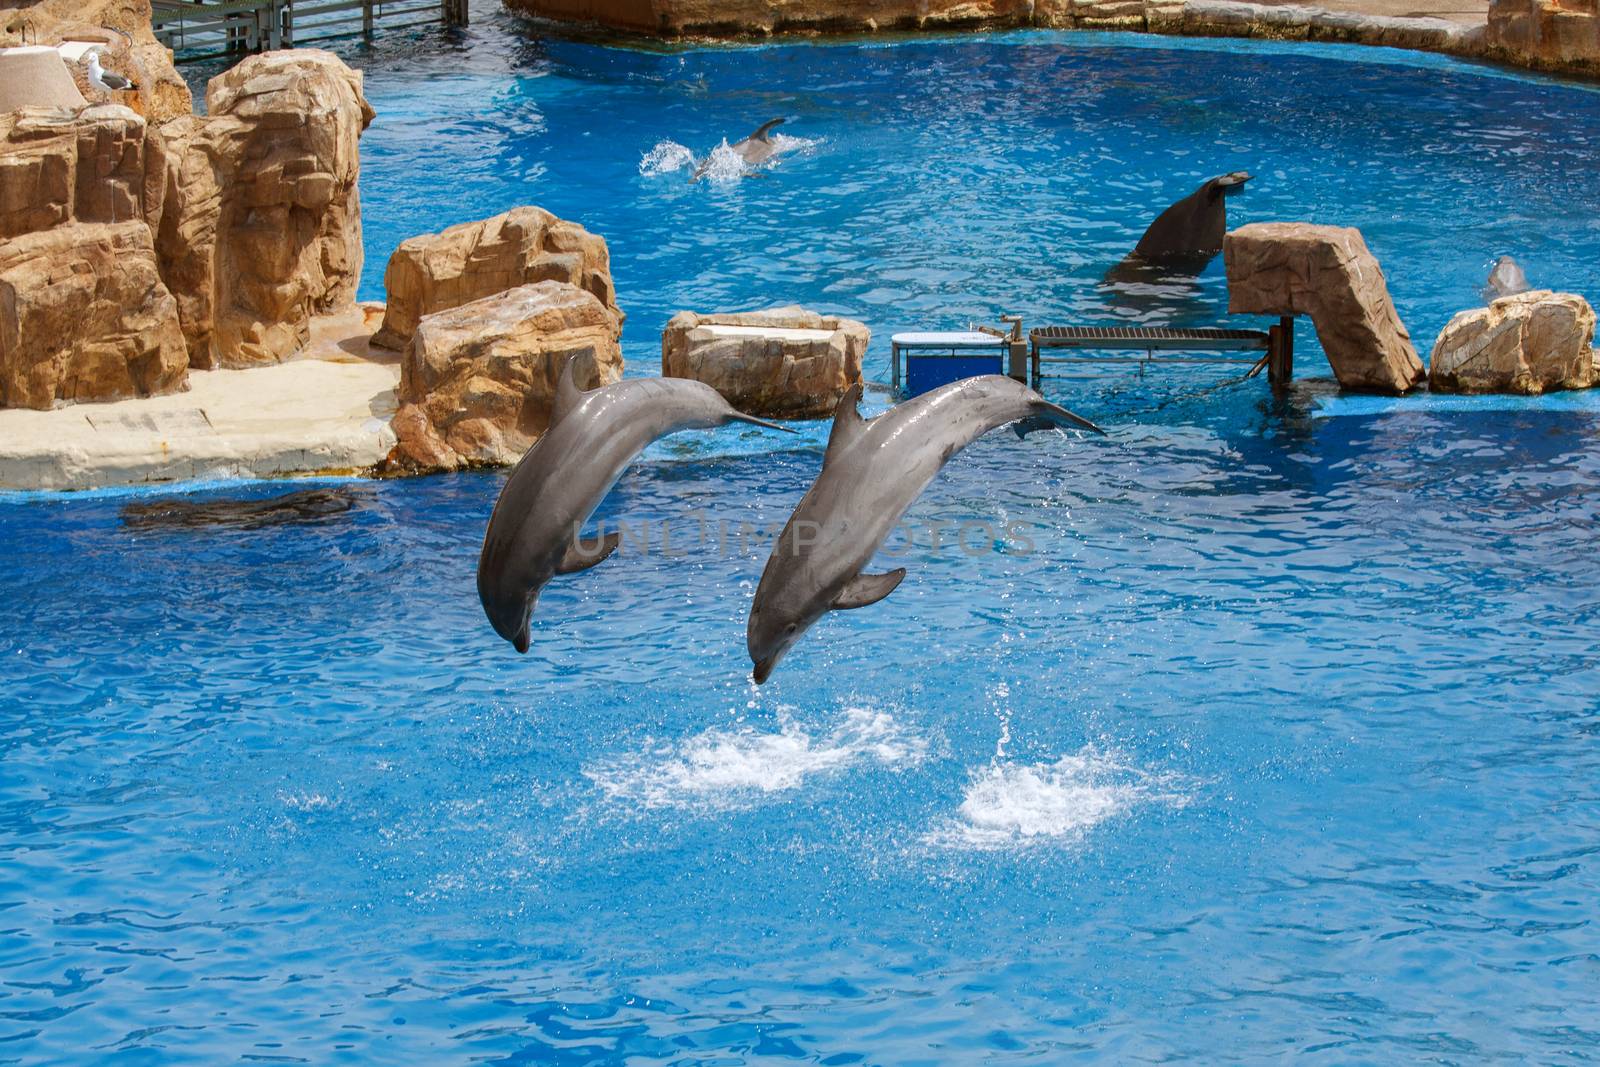 Dolphin Show at Sea World by Roka